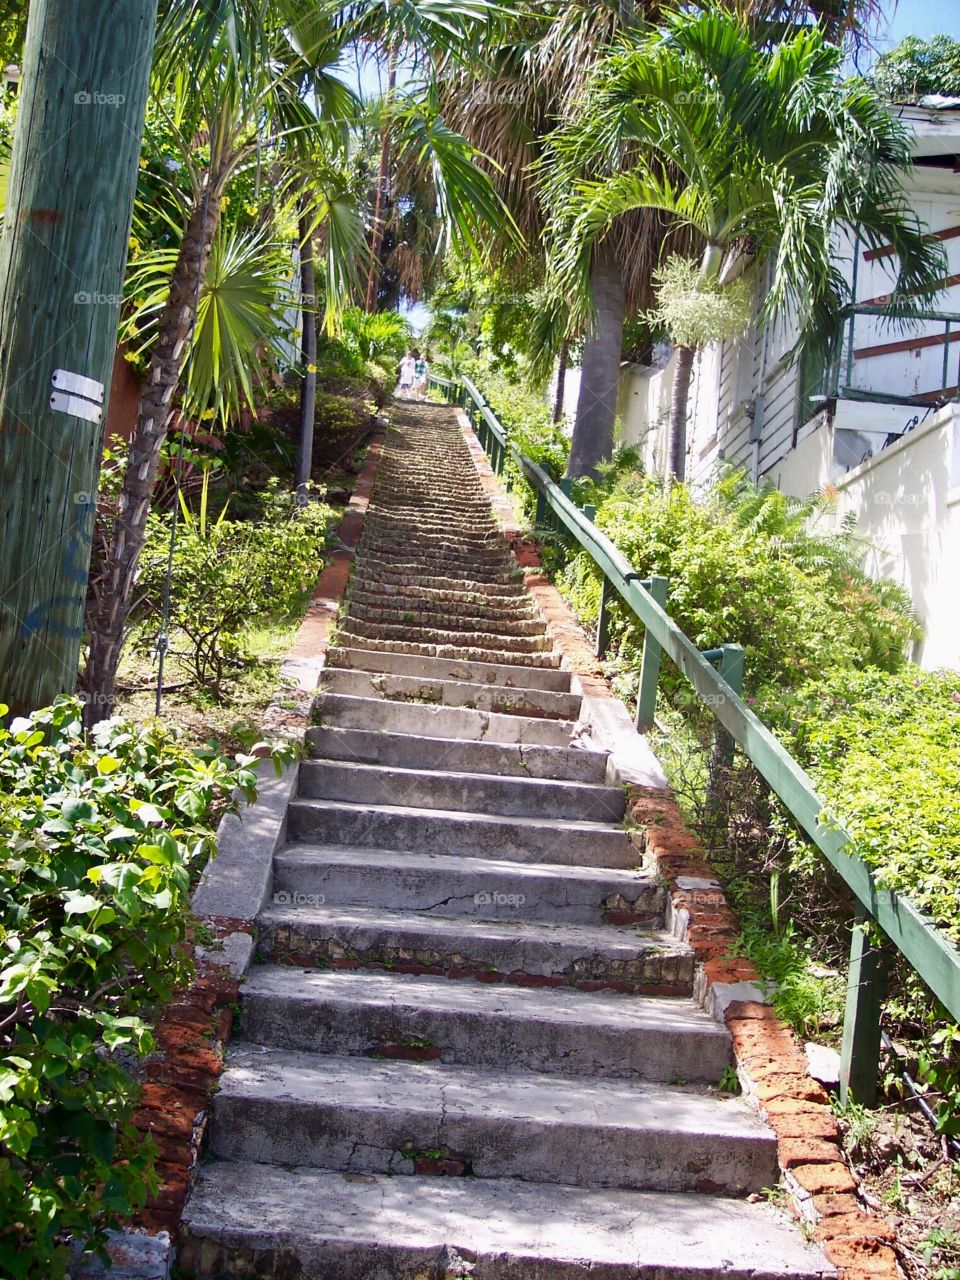 Stairs at St. Thomas 